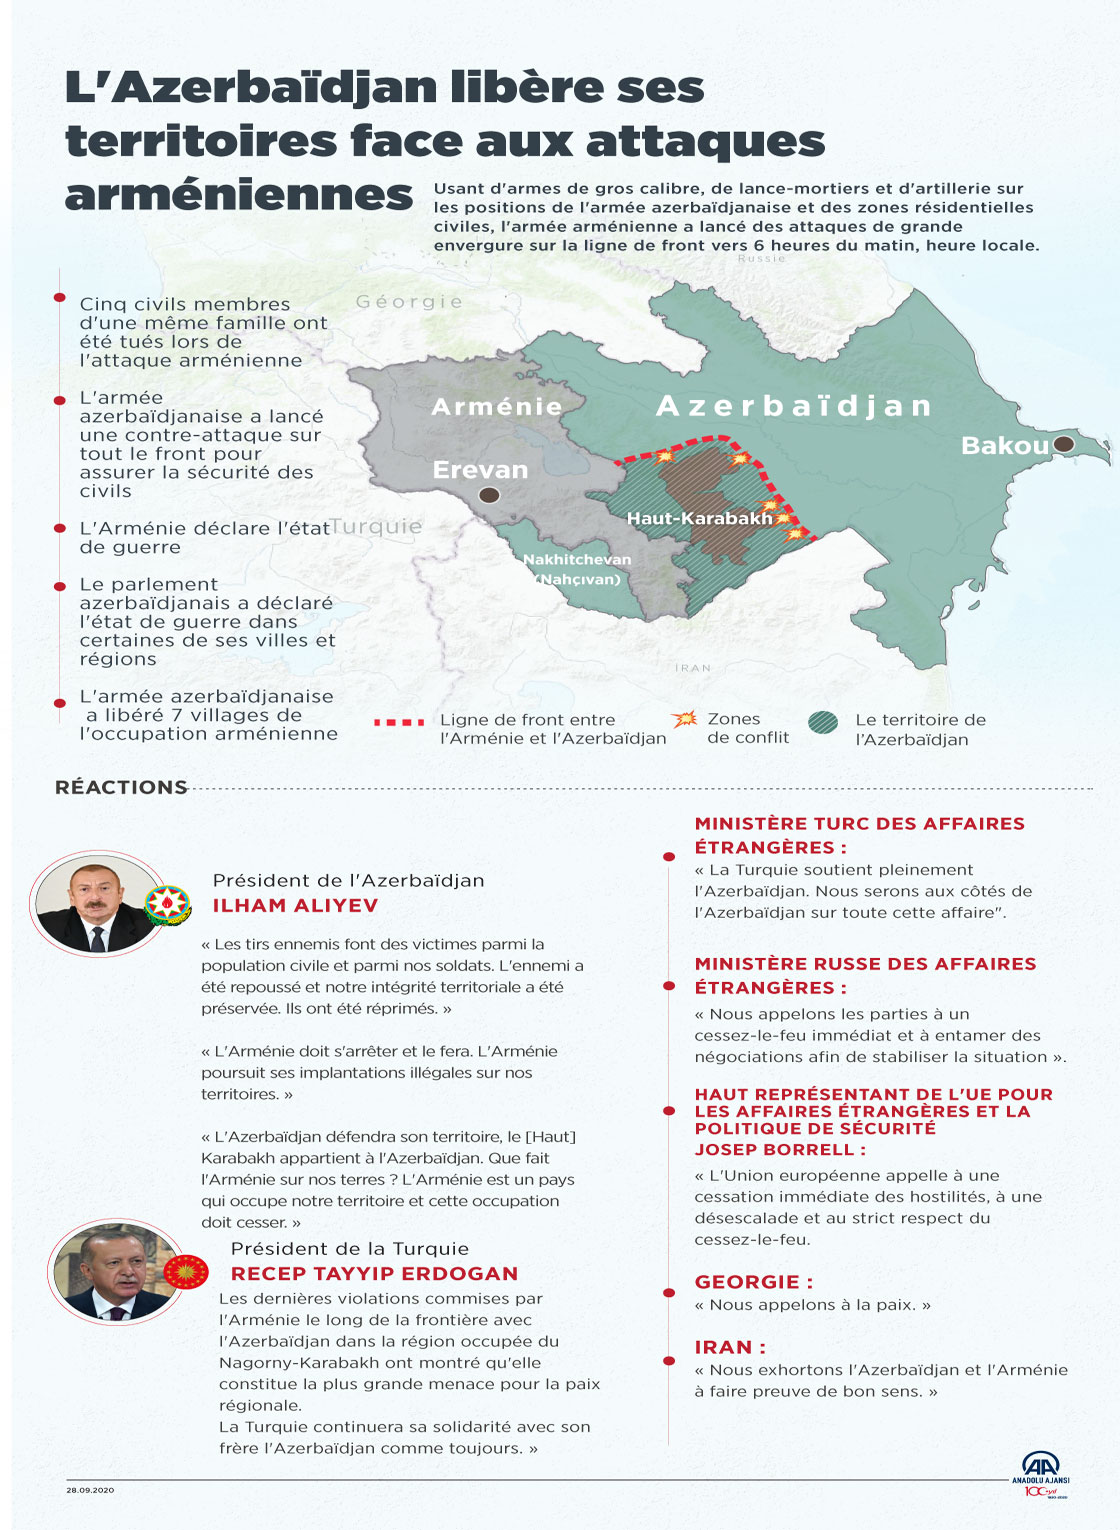 L'Azerbaïdjan libère ses territoires face aux attaques arméniennes